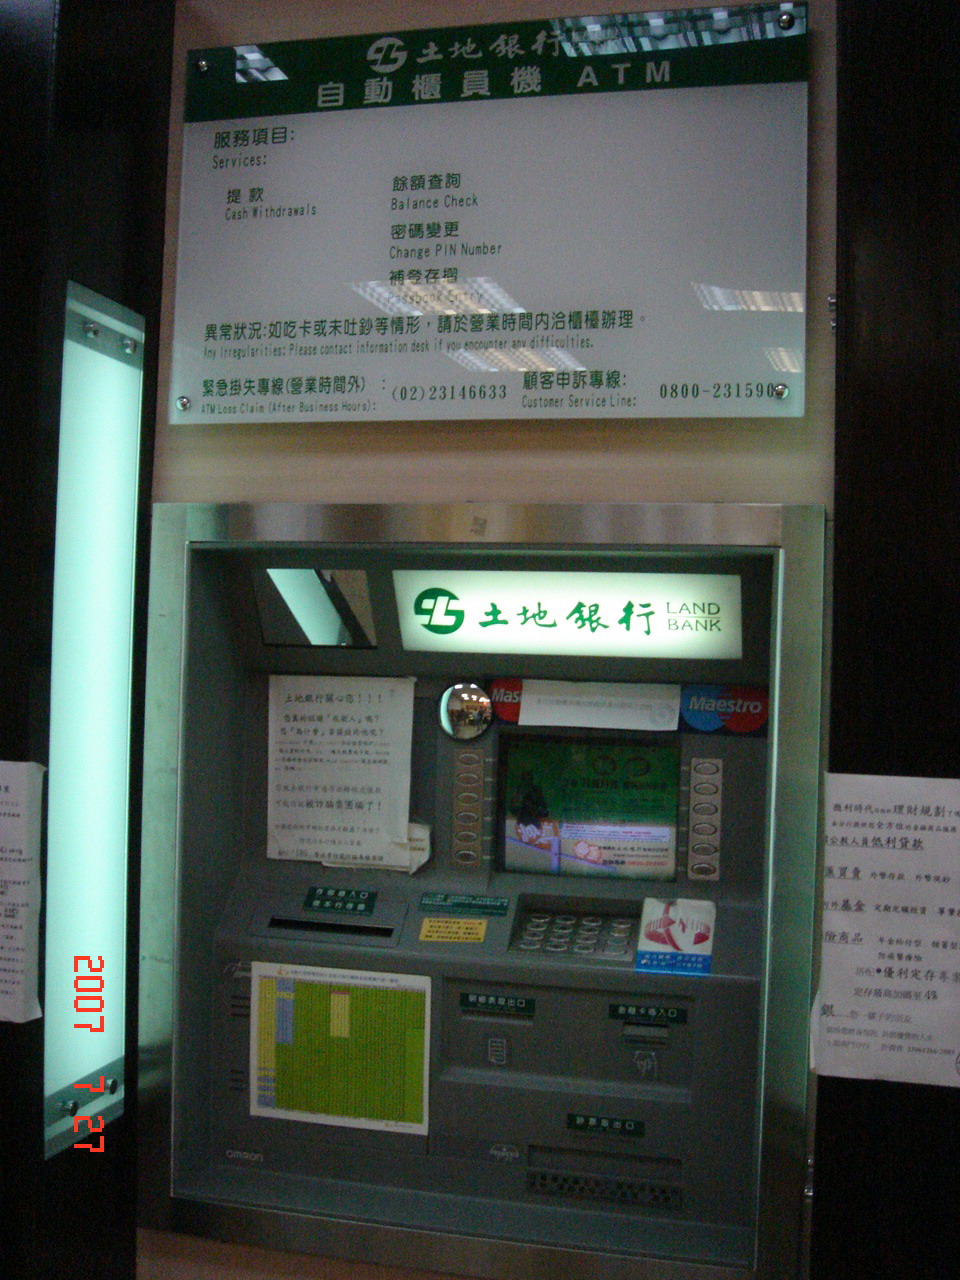 Brooklyn ATM